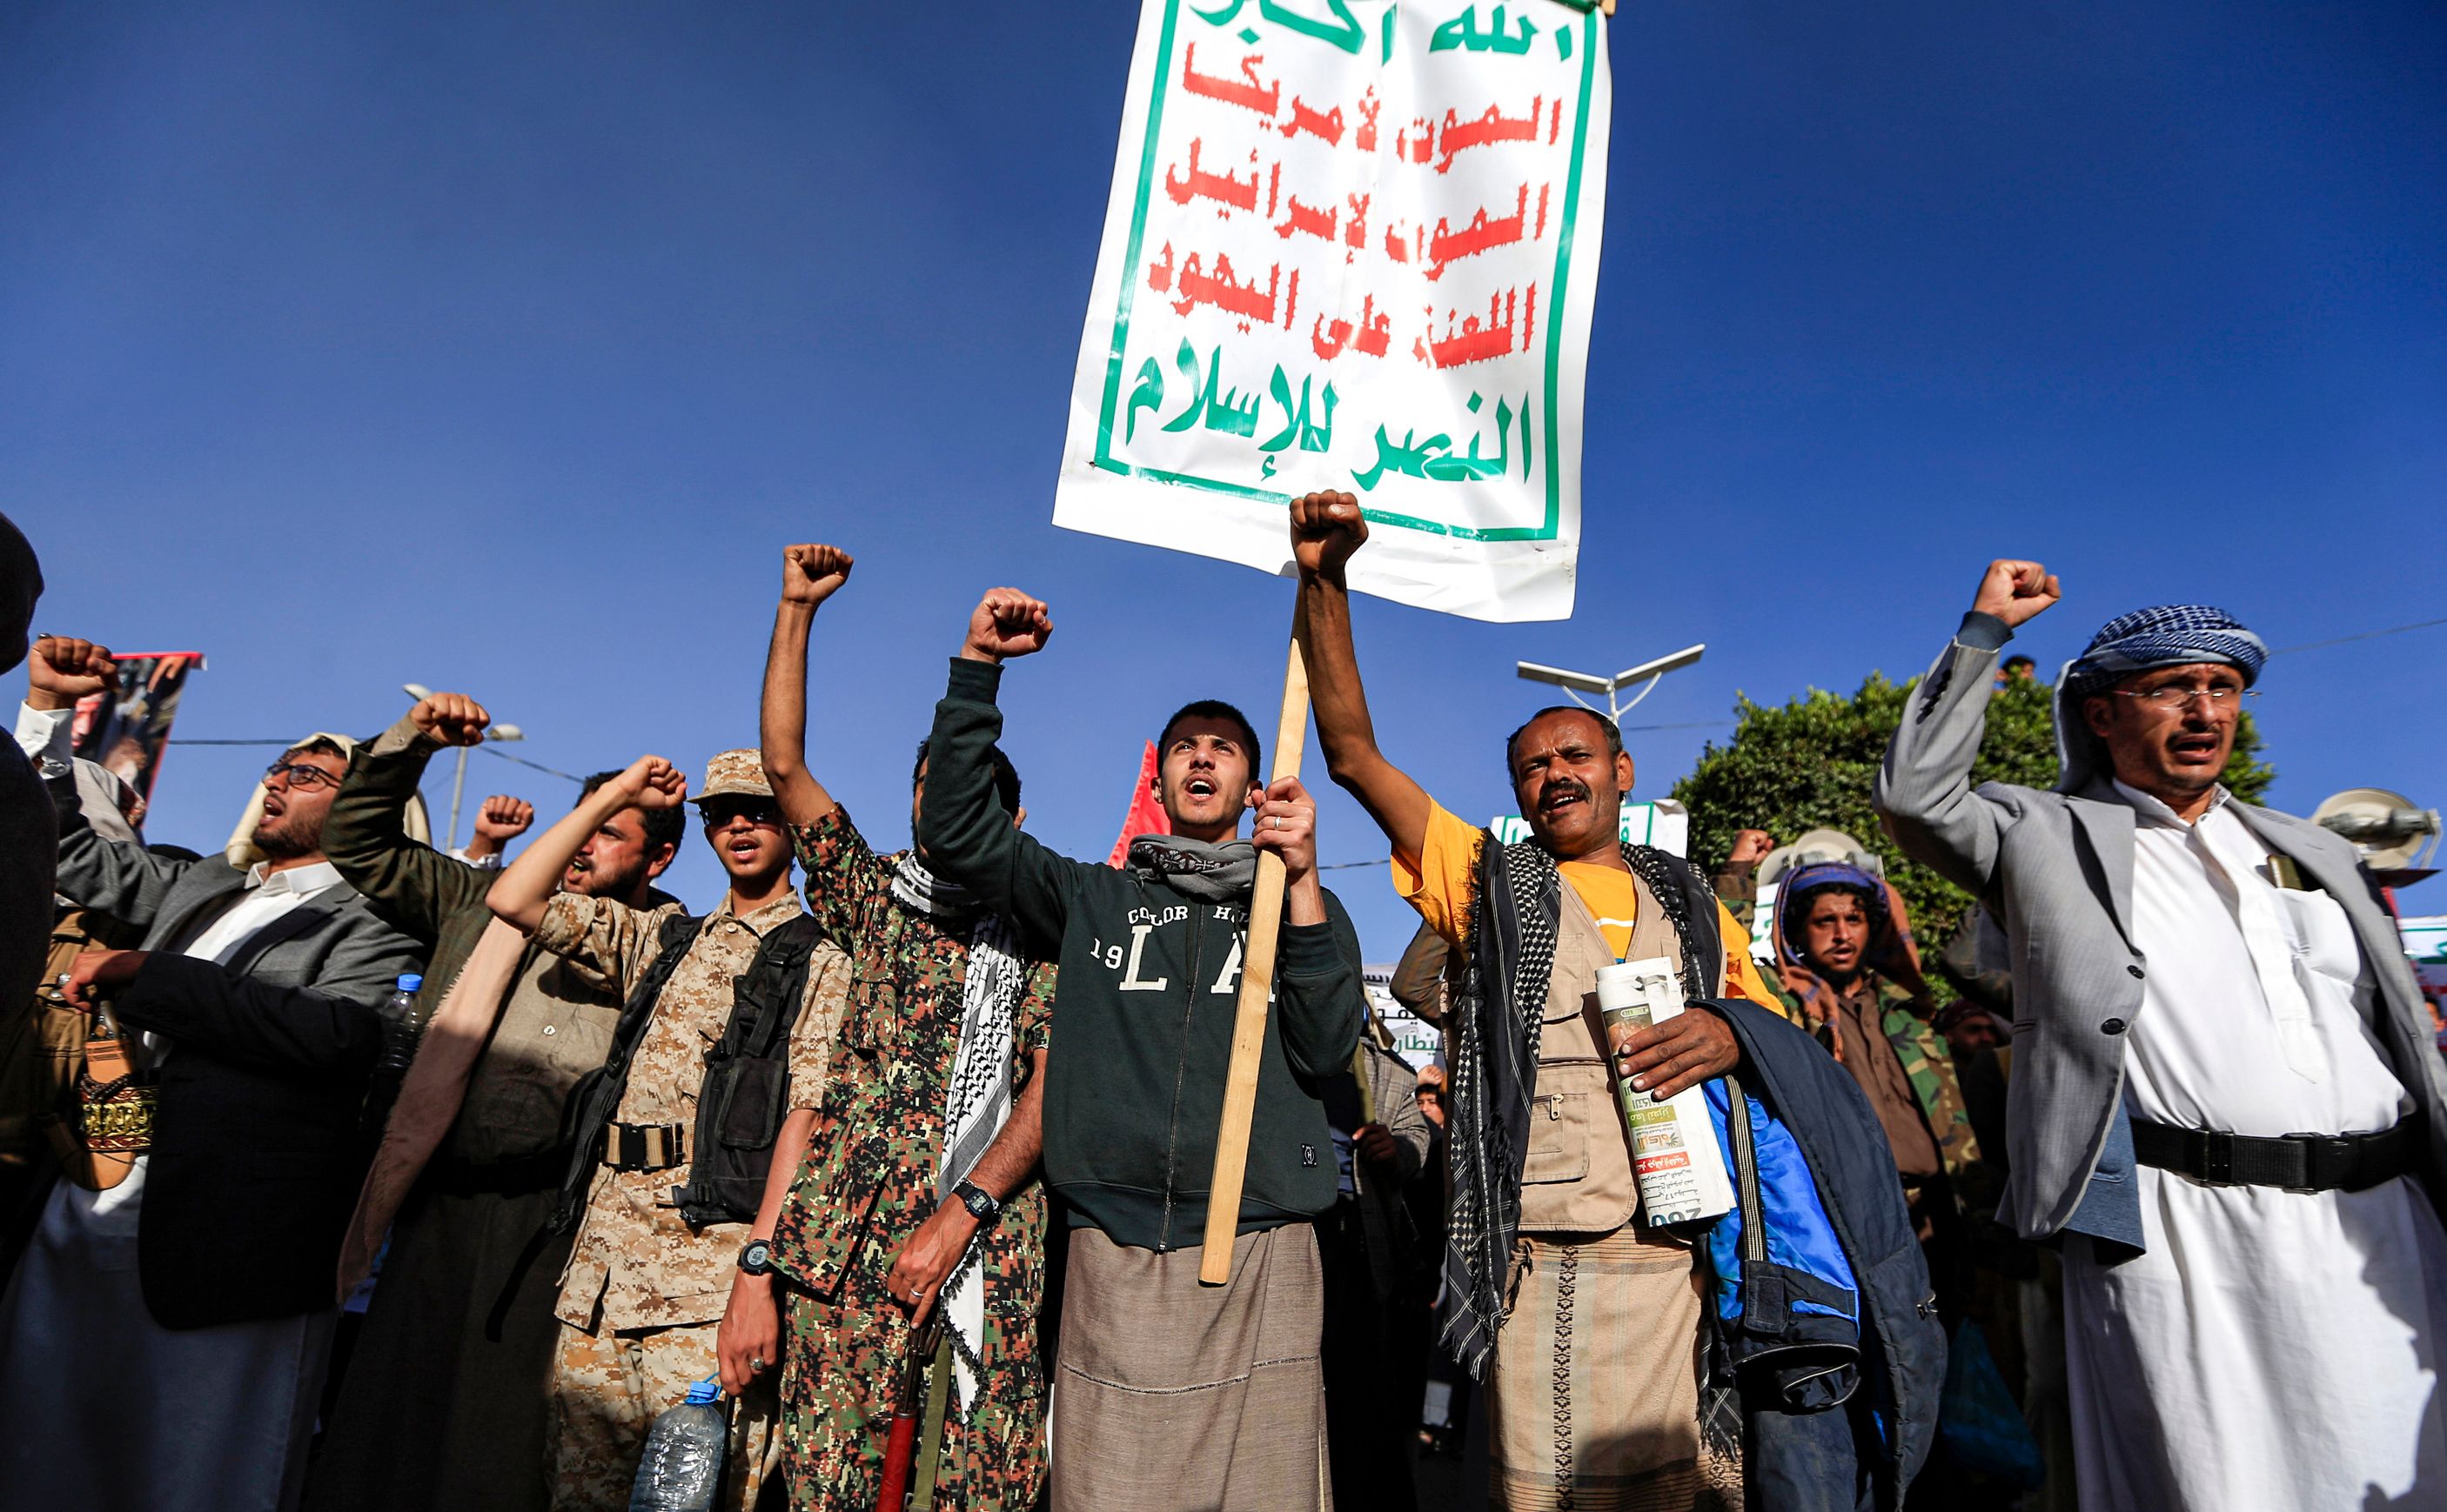 Las esperanzas rotas de Yemen 10 años de guerra, balcanización y